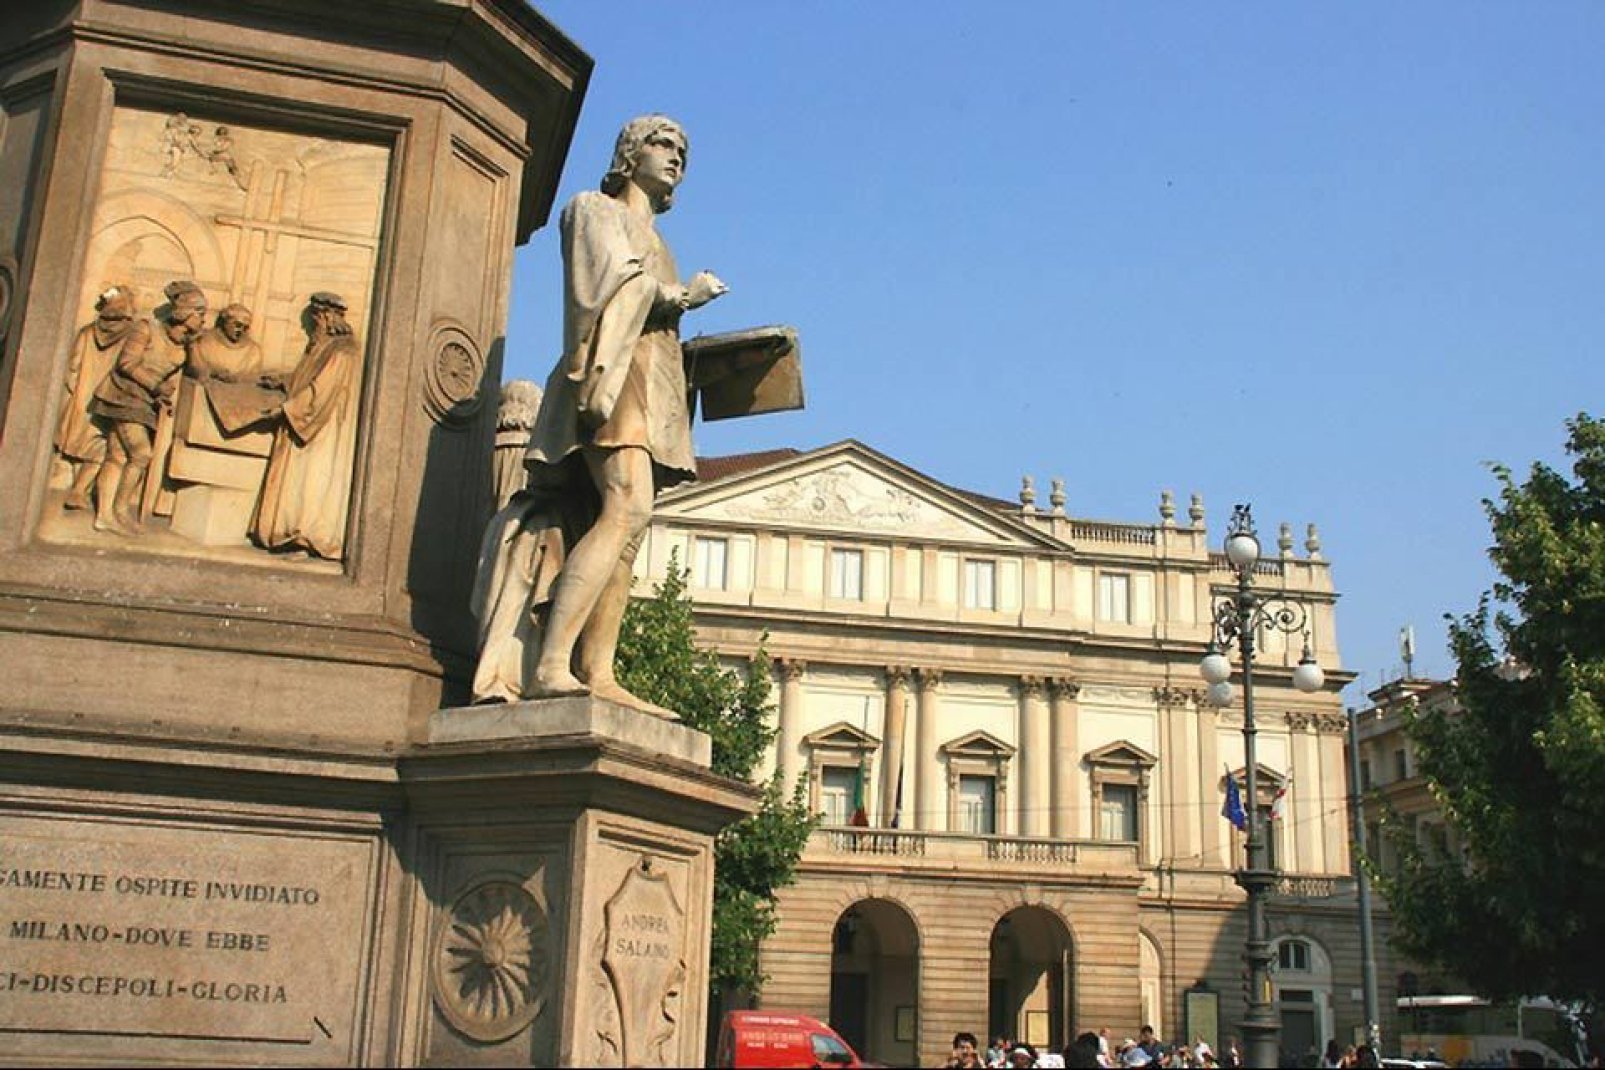 Le Teatro alla Scala de Milan, temple de l'opéra lyrique, est peut-être l'institution culturelle la plus admirée du chef-lieu lombard.